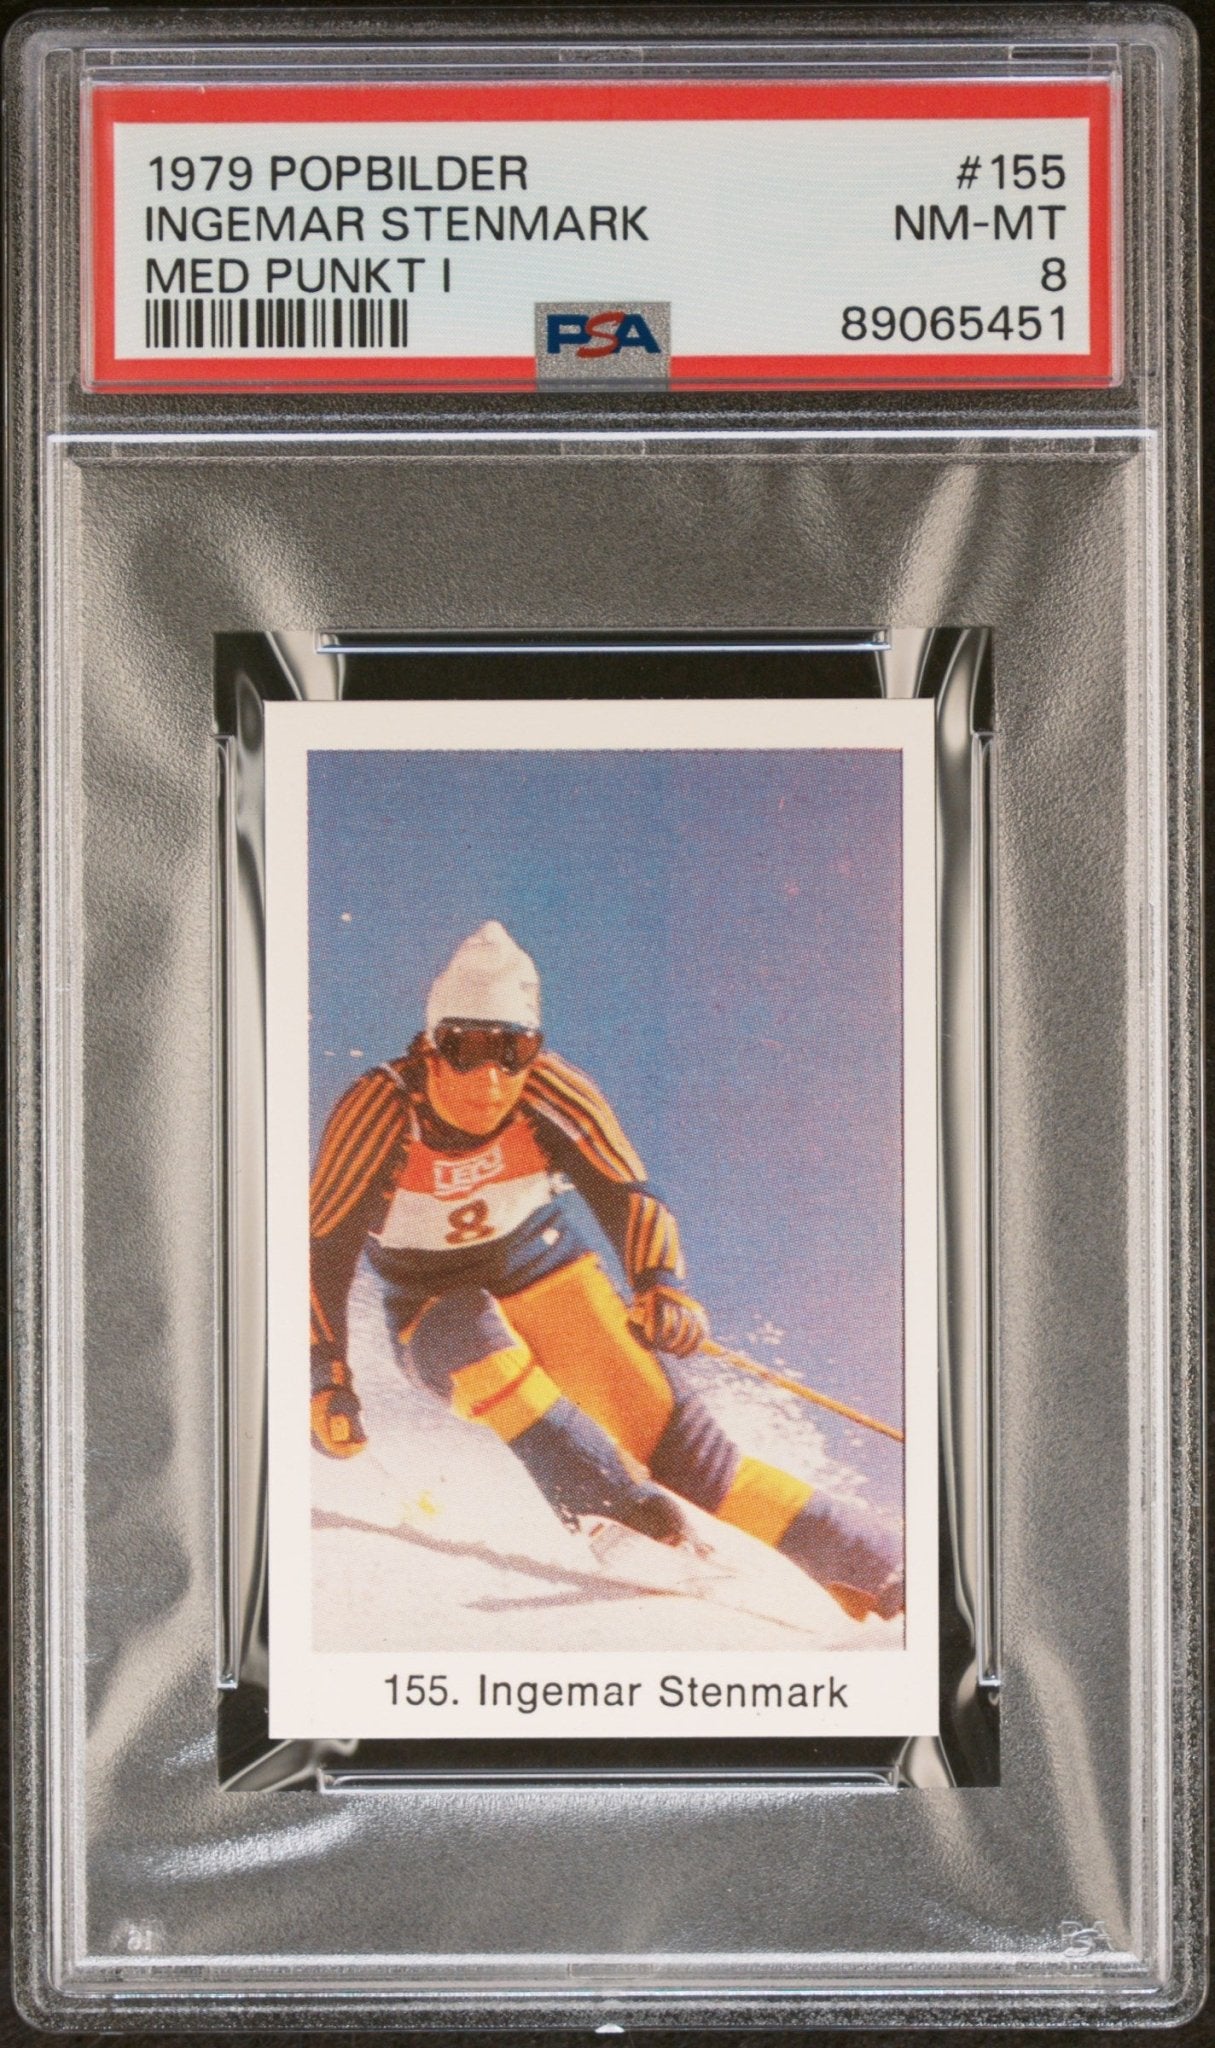 INGEMAR STENMARK PSA 8 1979 Popbilder Med Punkt IV Olympics Ski Racer #155 Misc - Sports Base Graded Cards - Hobby Gems